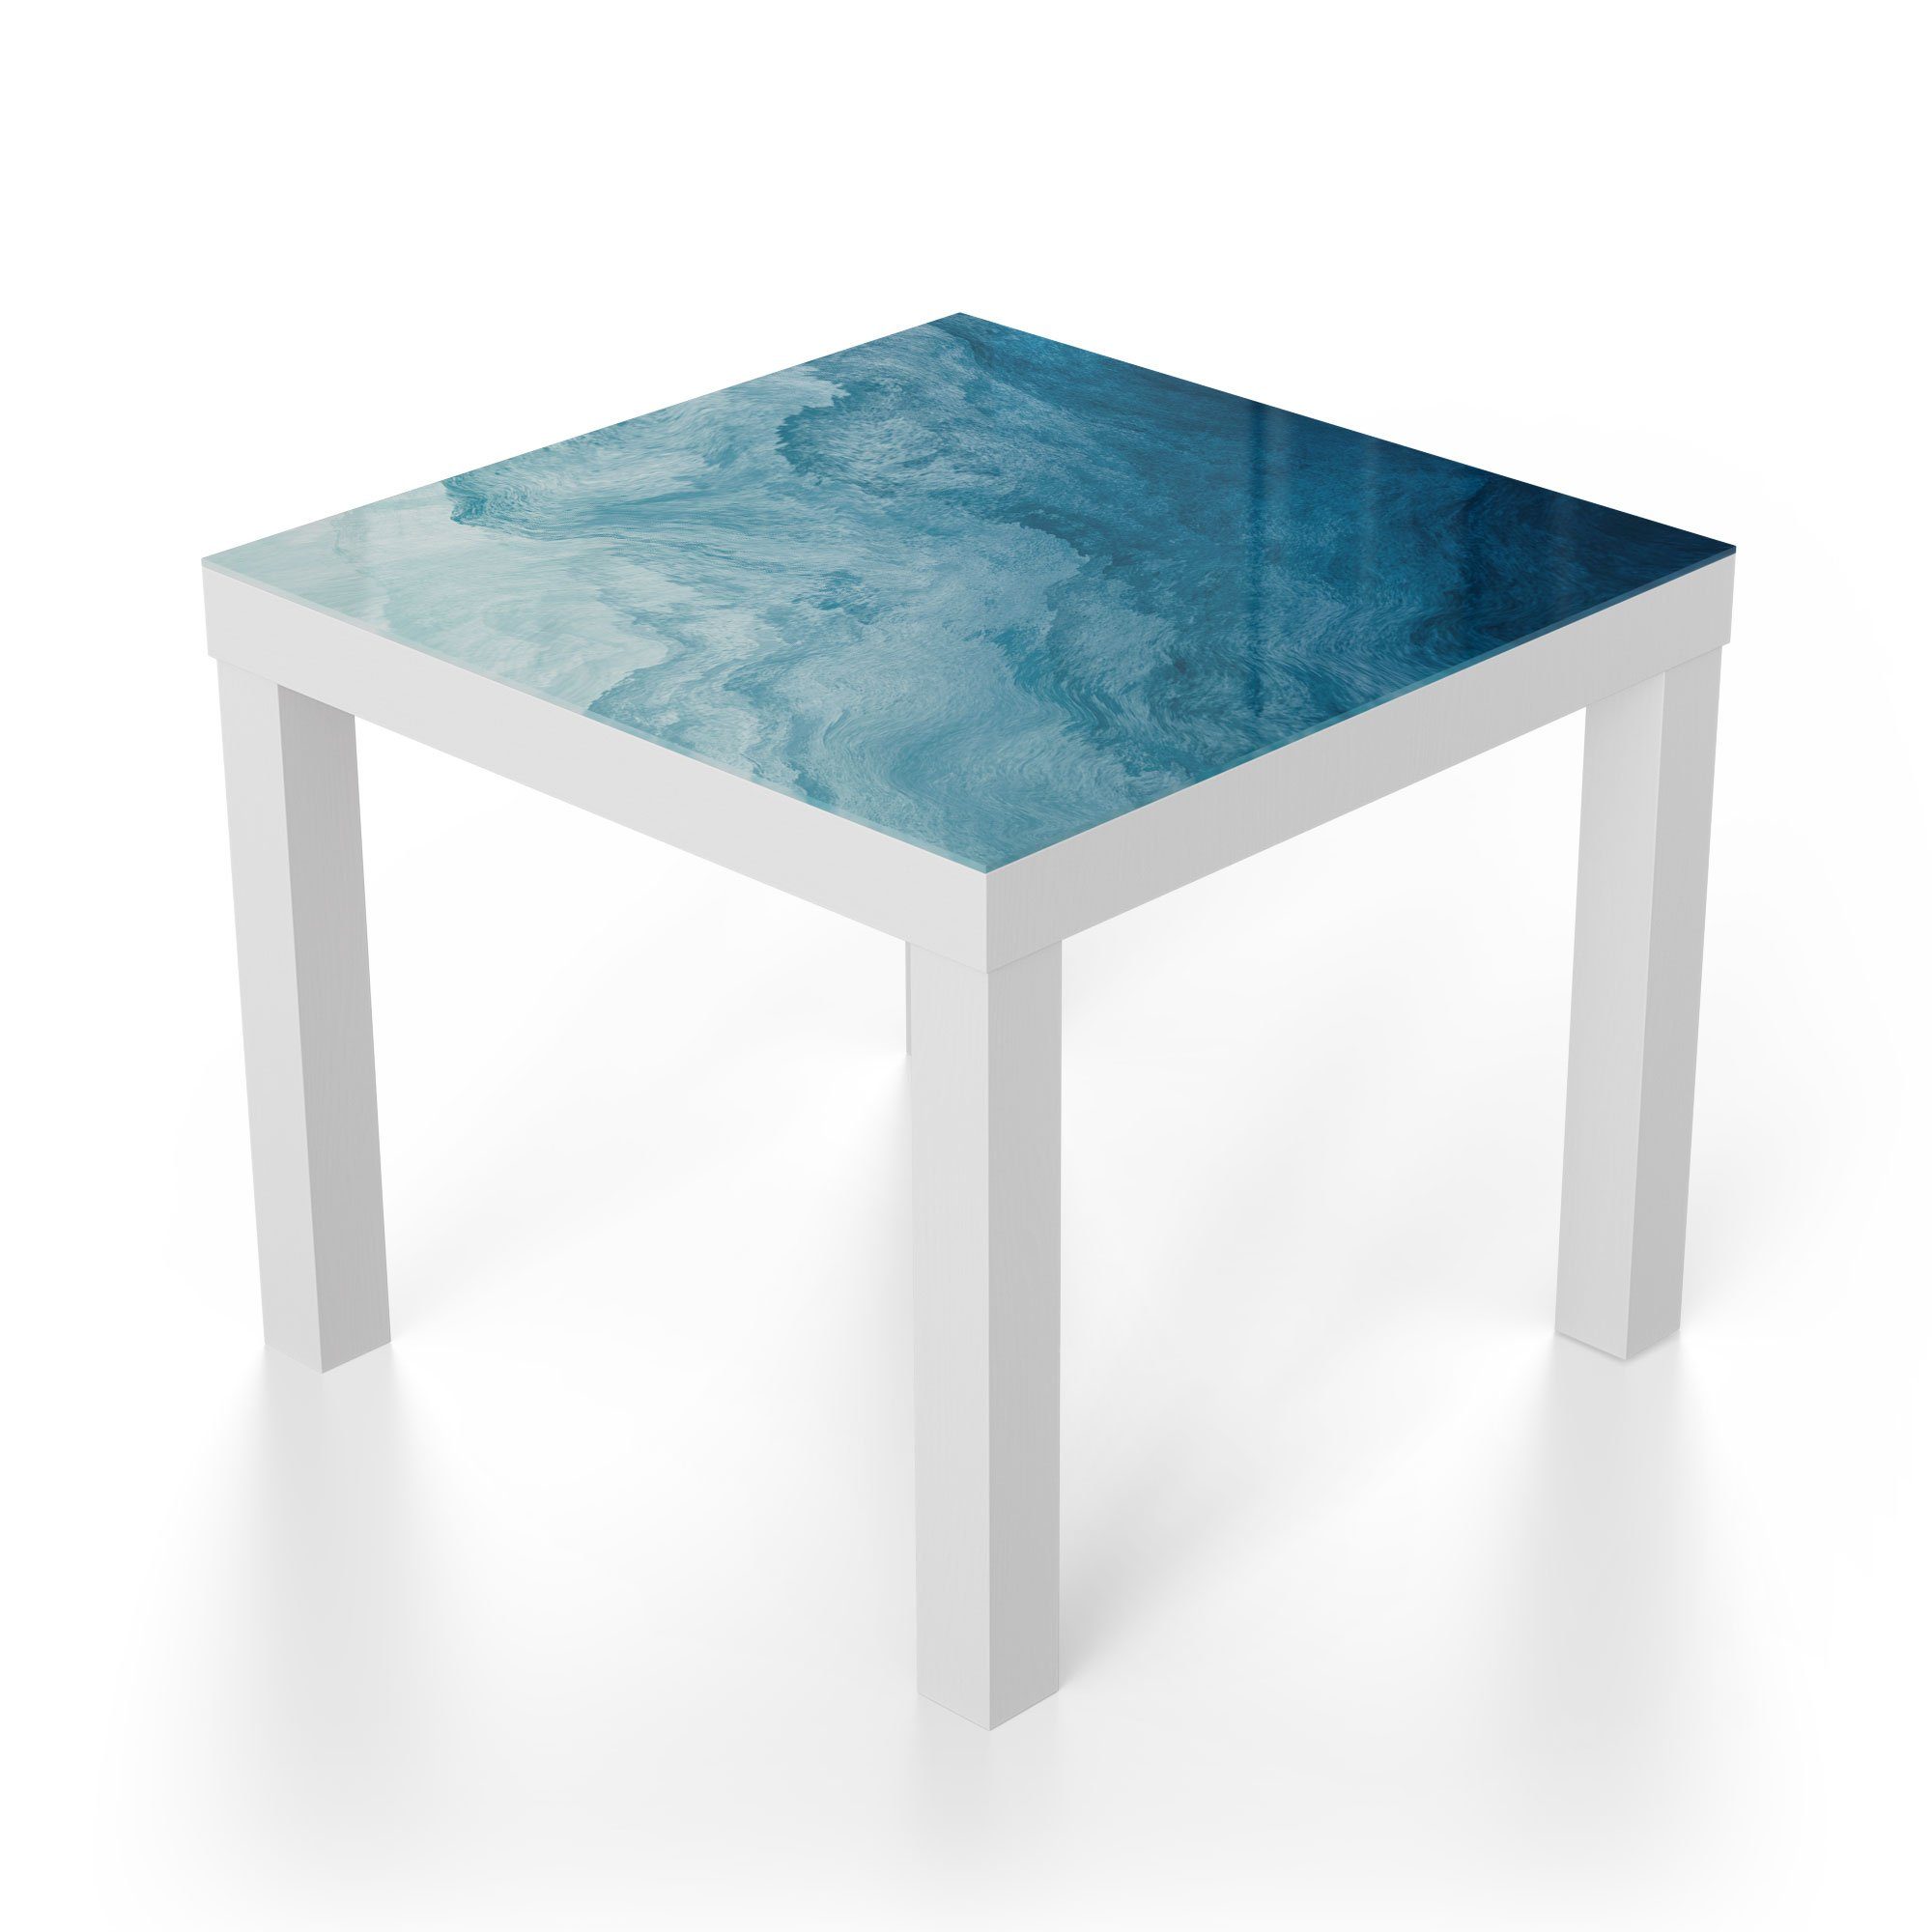 DEQORI Couchtisch 'Aufgewühlte Wellen', modern Glas Weiß Beistelltisch Glastisch